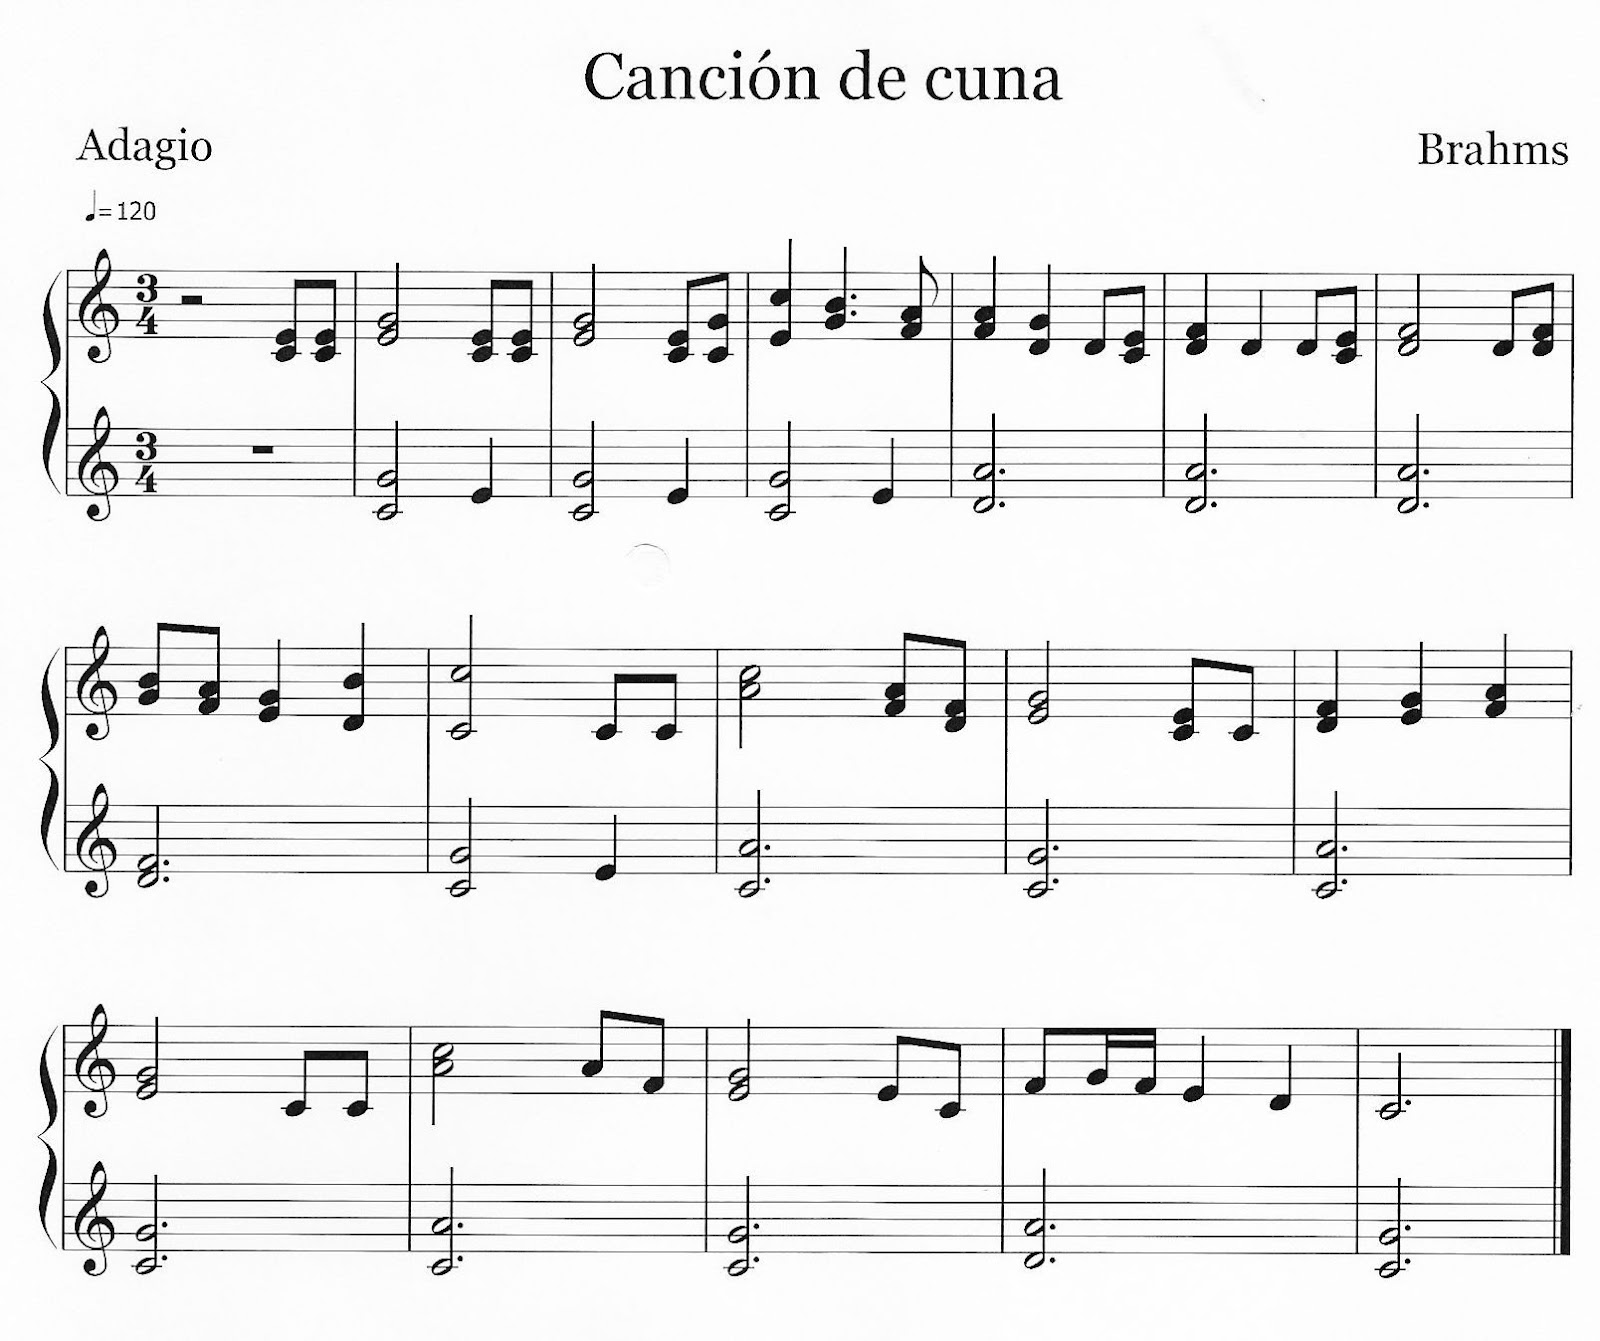 "Canción de cuna" de Brahms. Partitura para instrumentos de aula